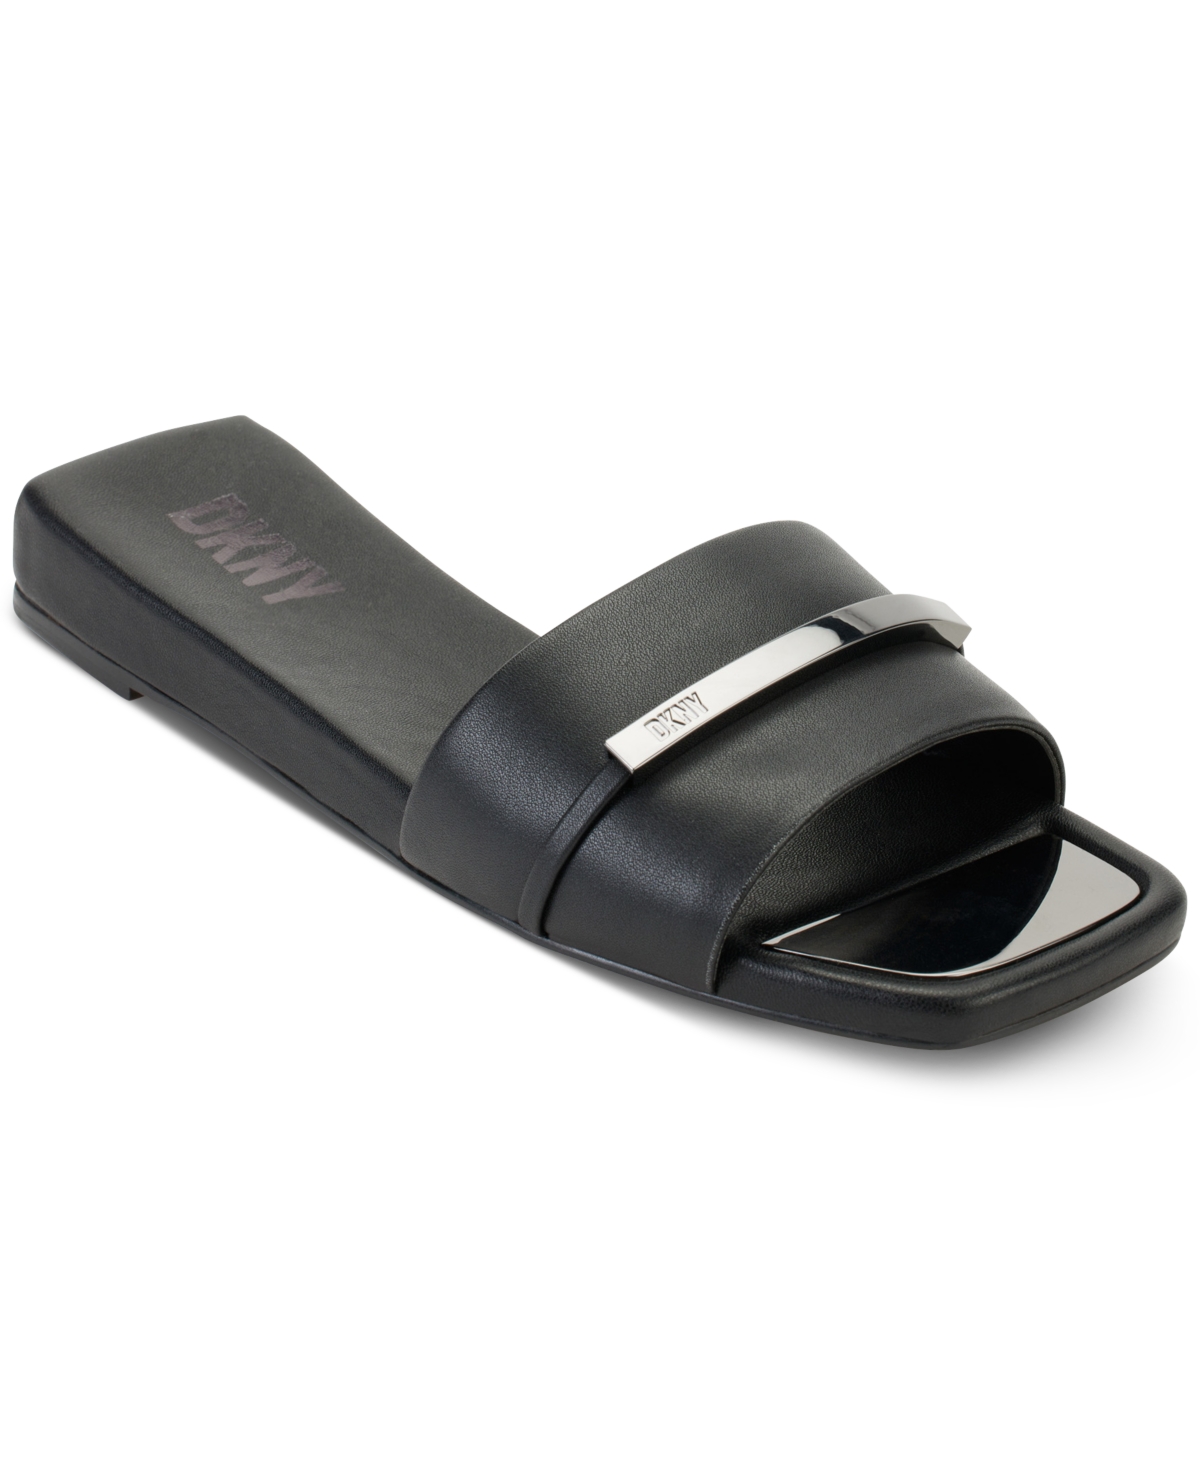 Women's Alaina Slip-On Hardware Slide Sandals - Black